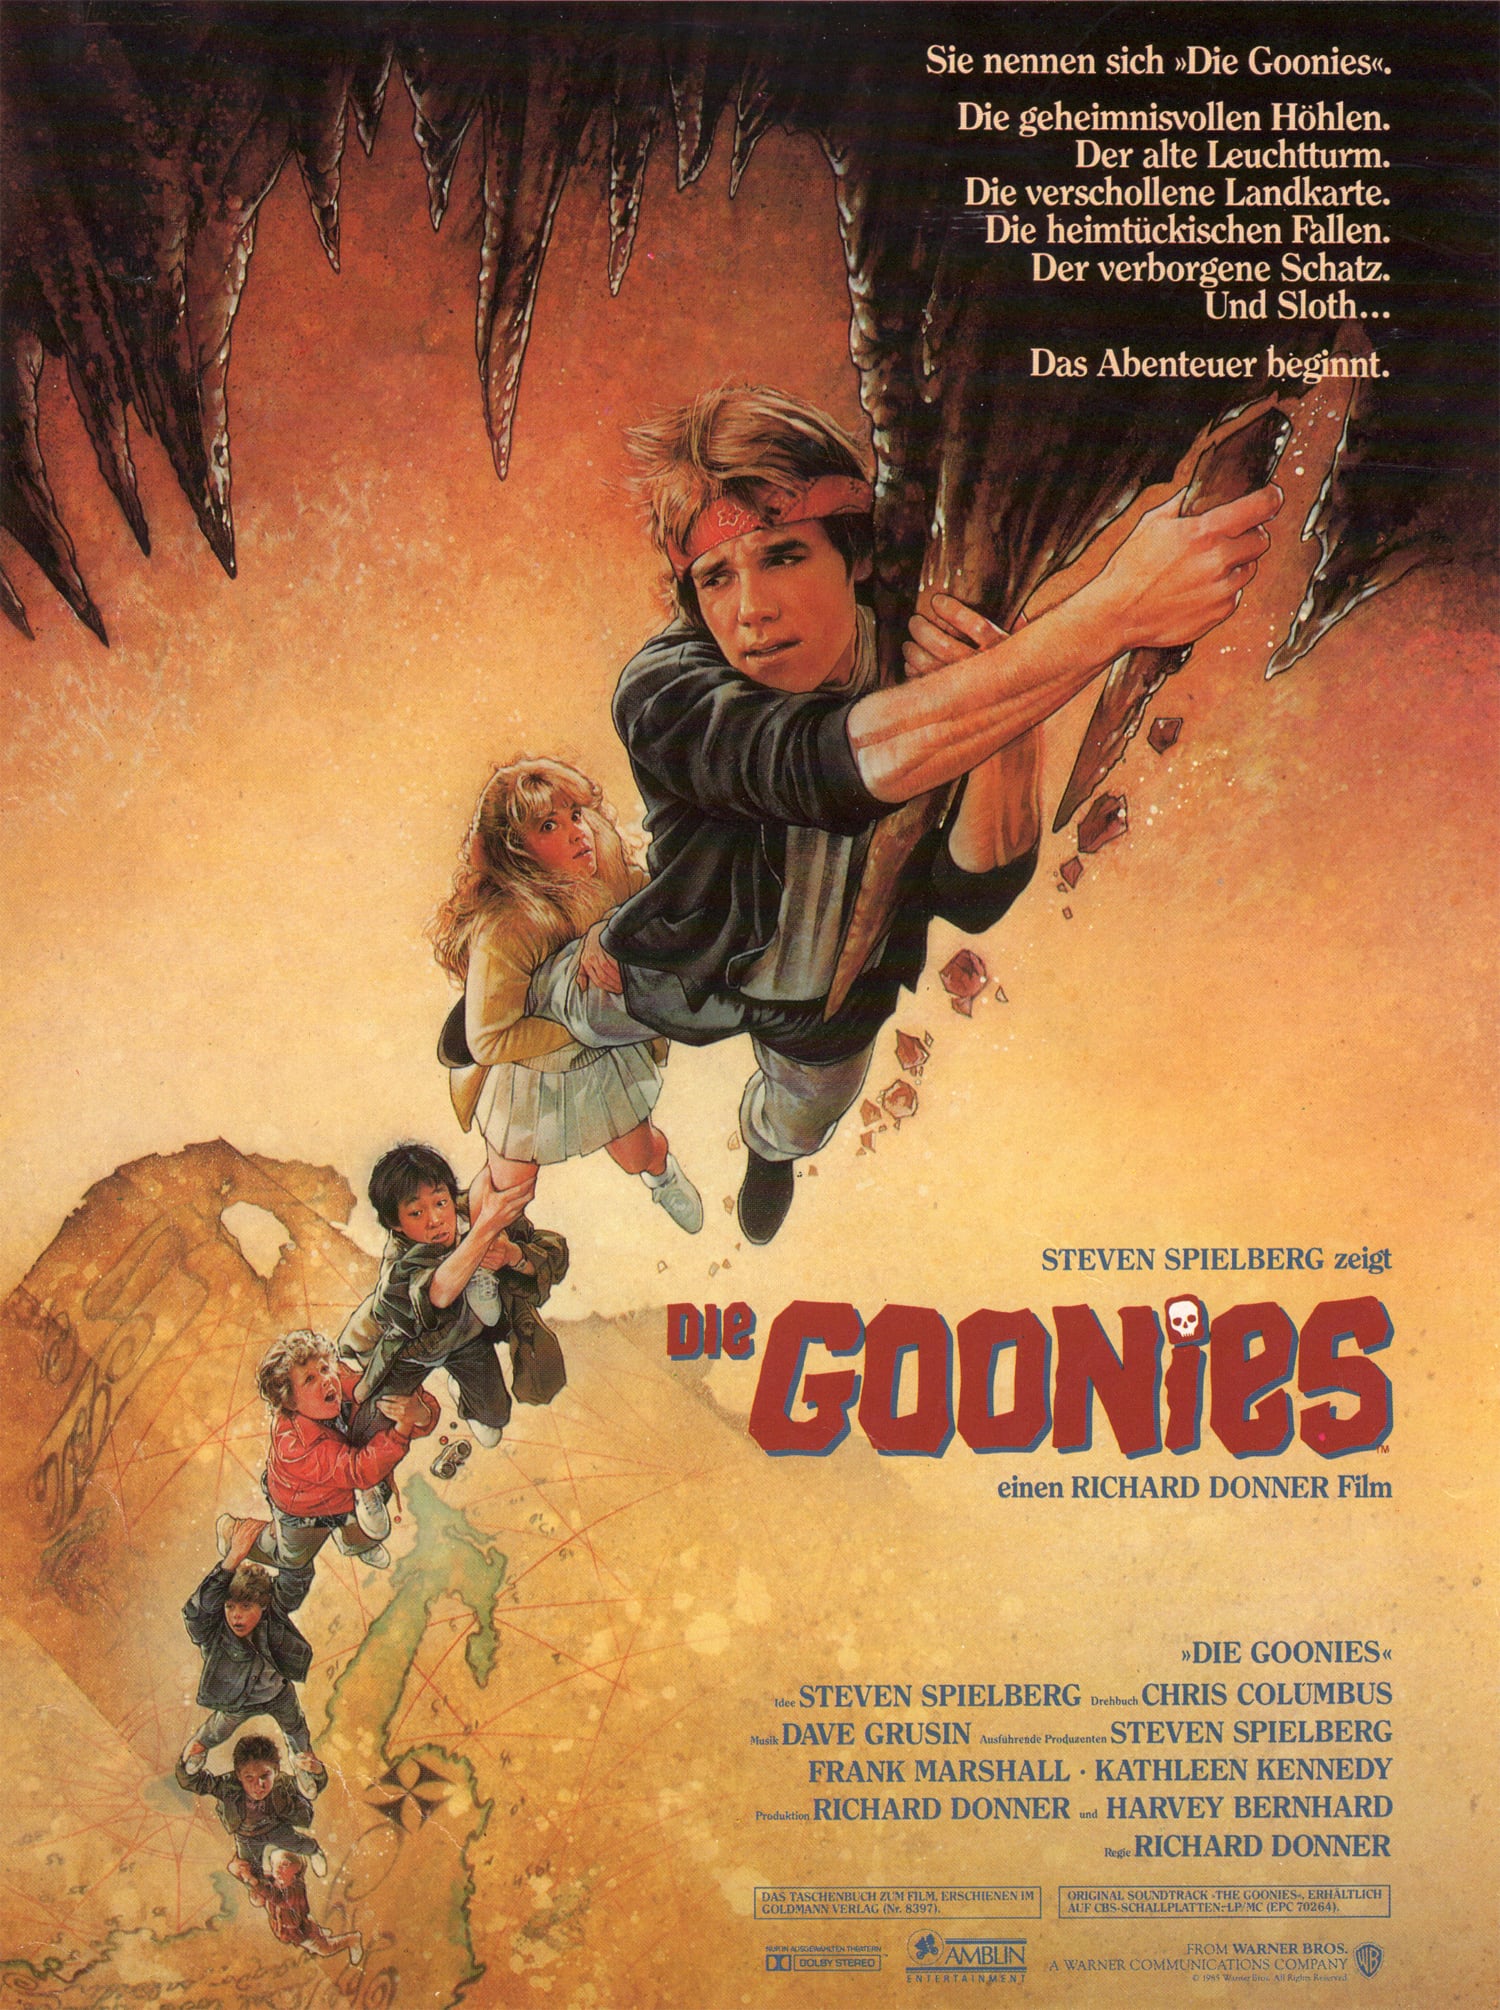 The Goonies (a).jpg